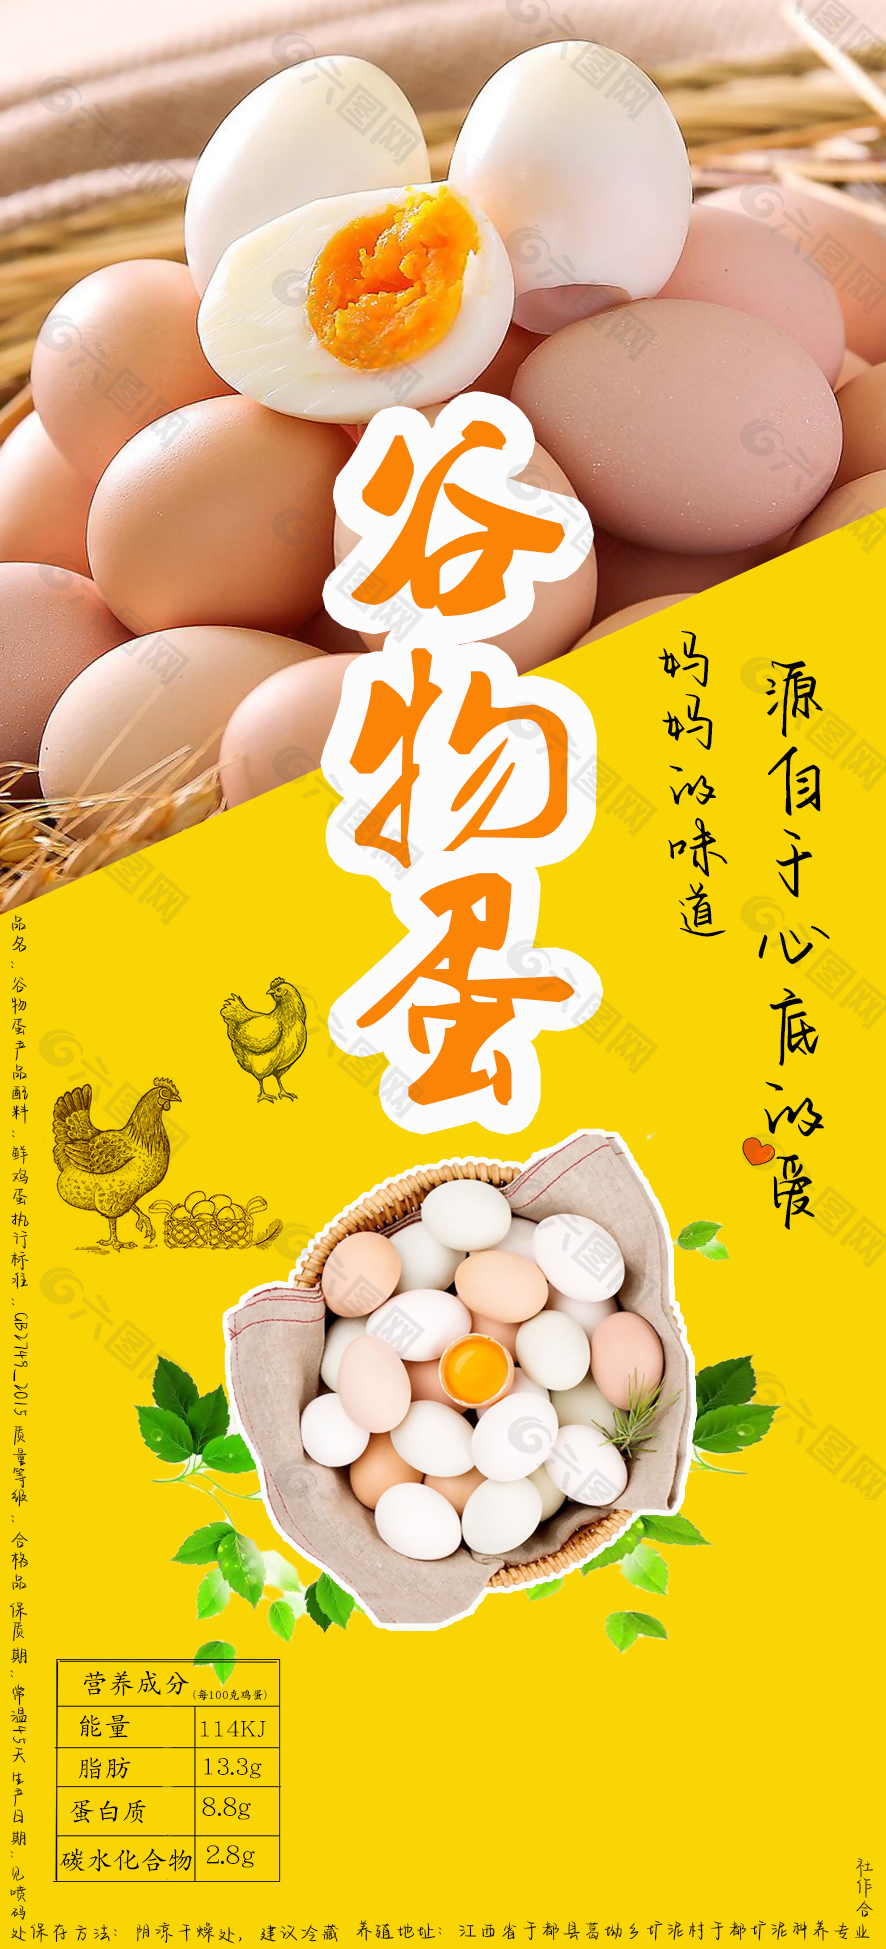 健康营养谷物蛋宣传单设计